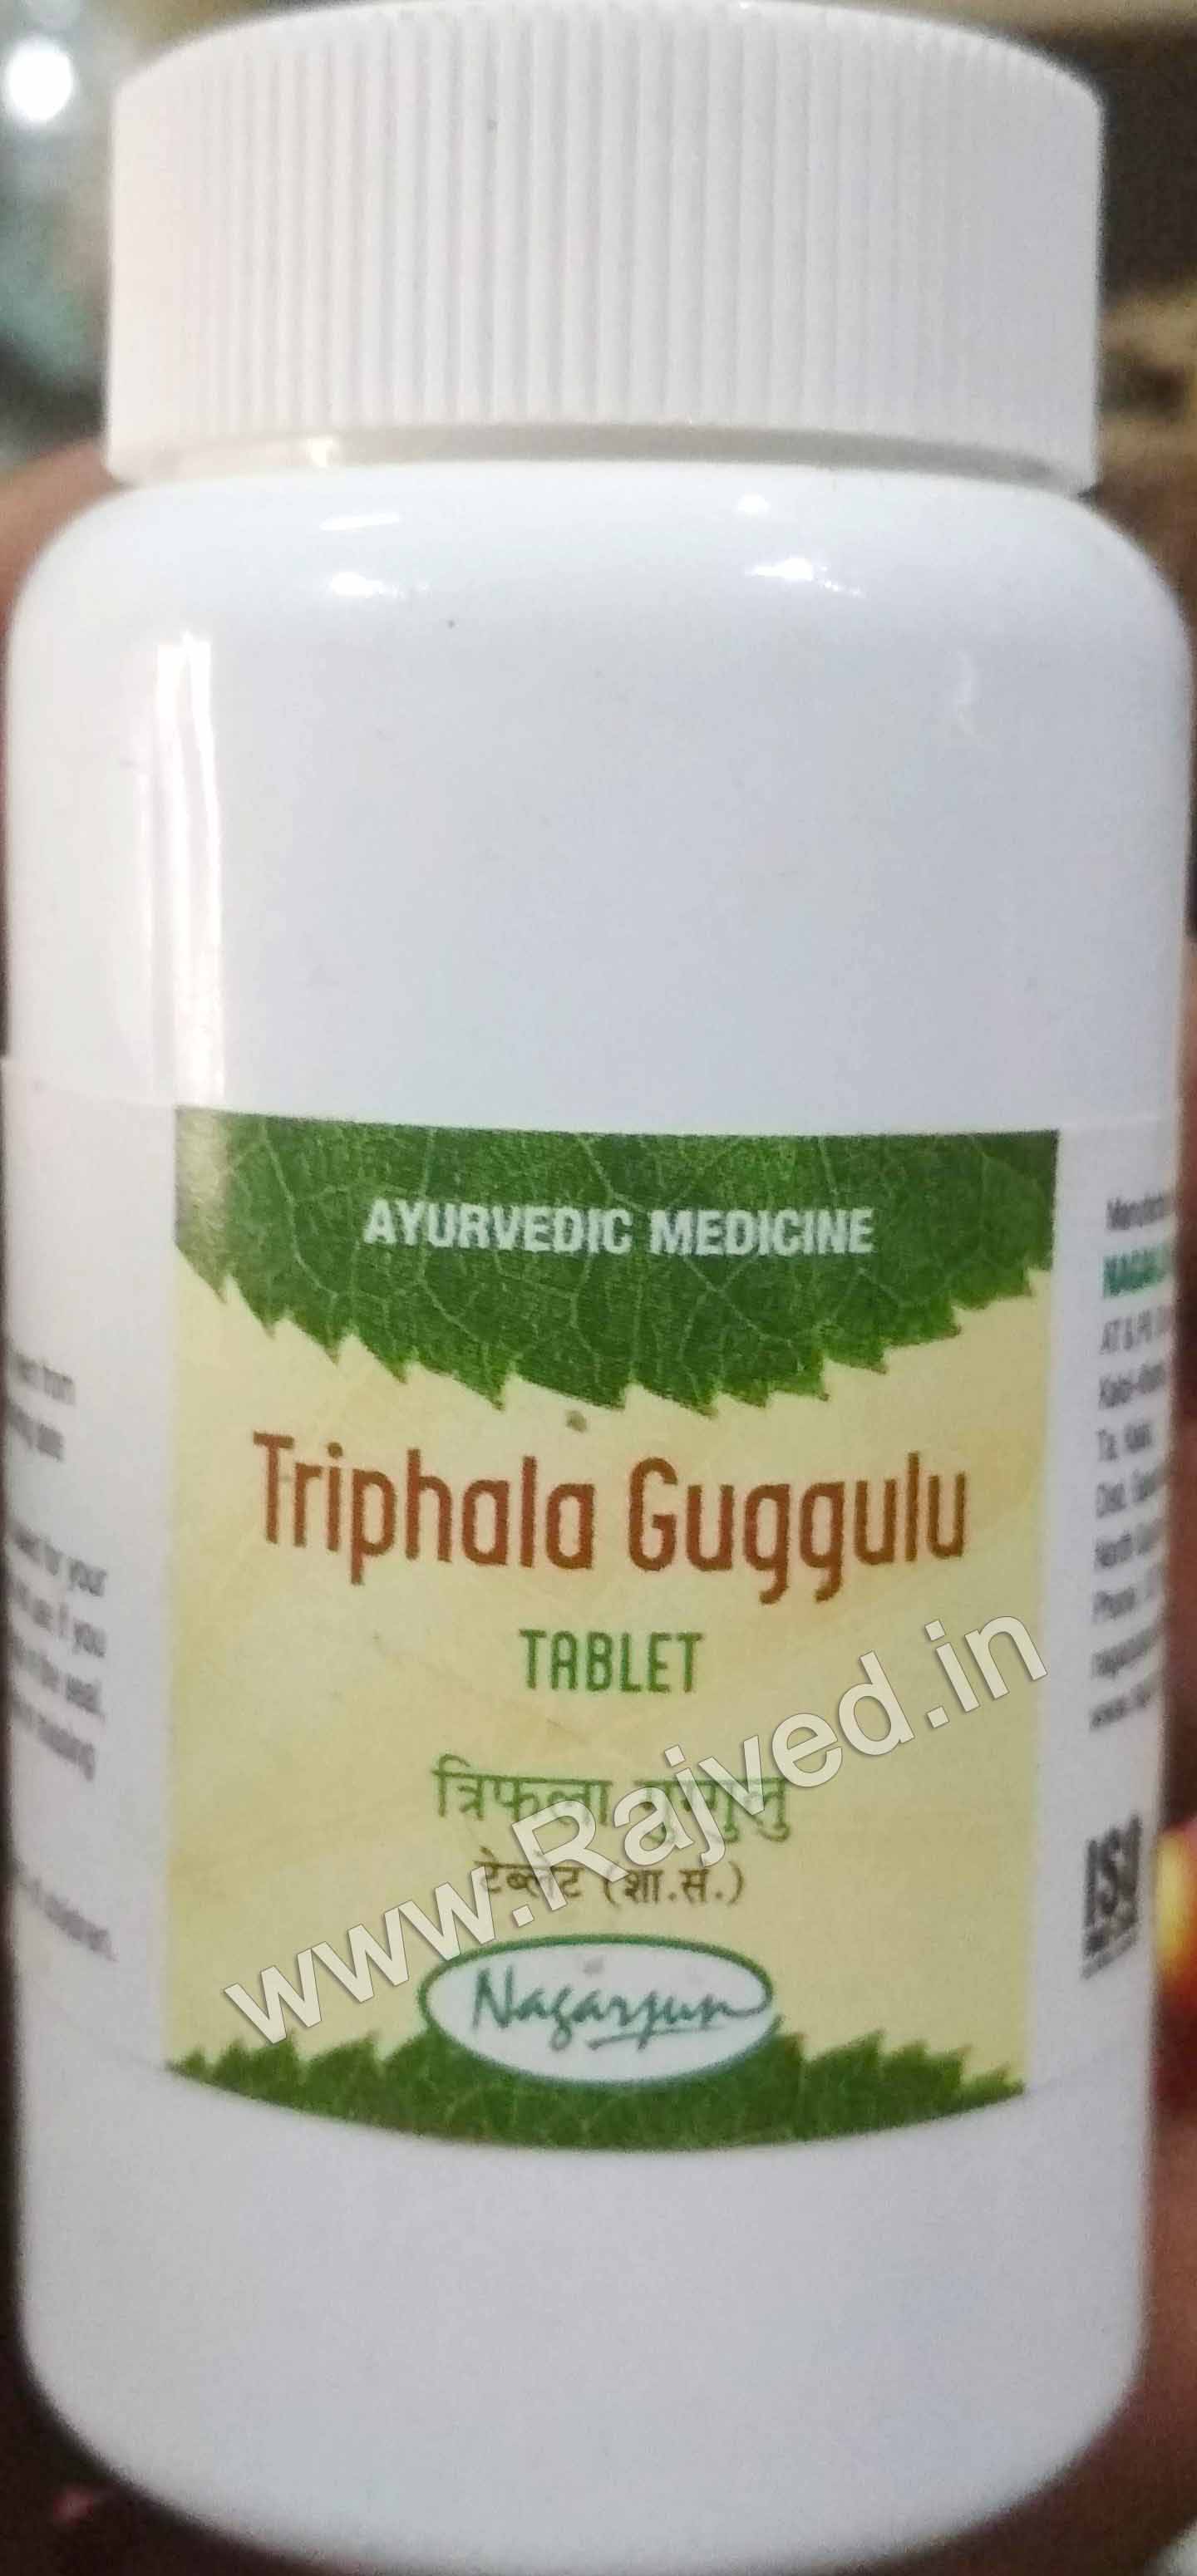 triphala guggul 2000 tab upto 20% off free shipping nagarjun pharma gujarat